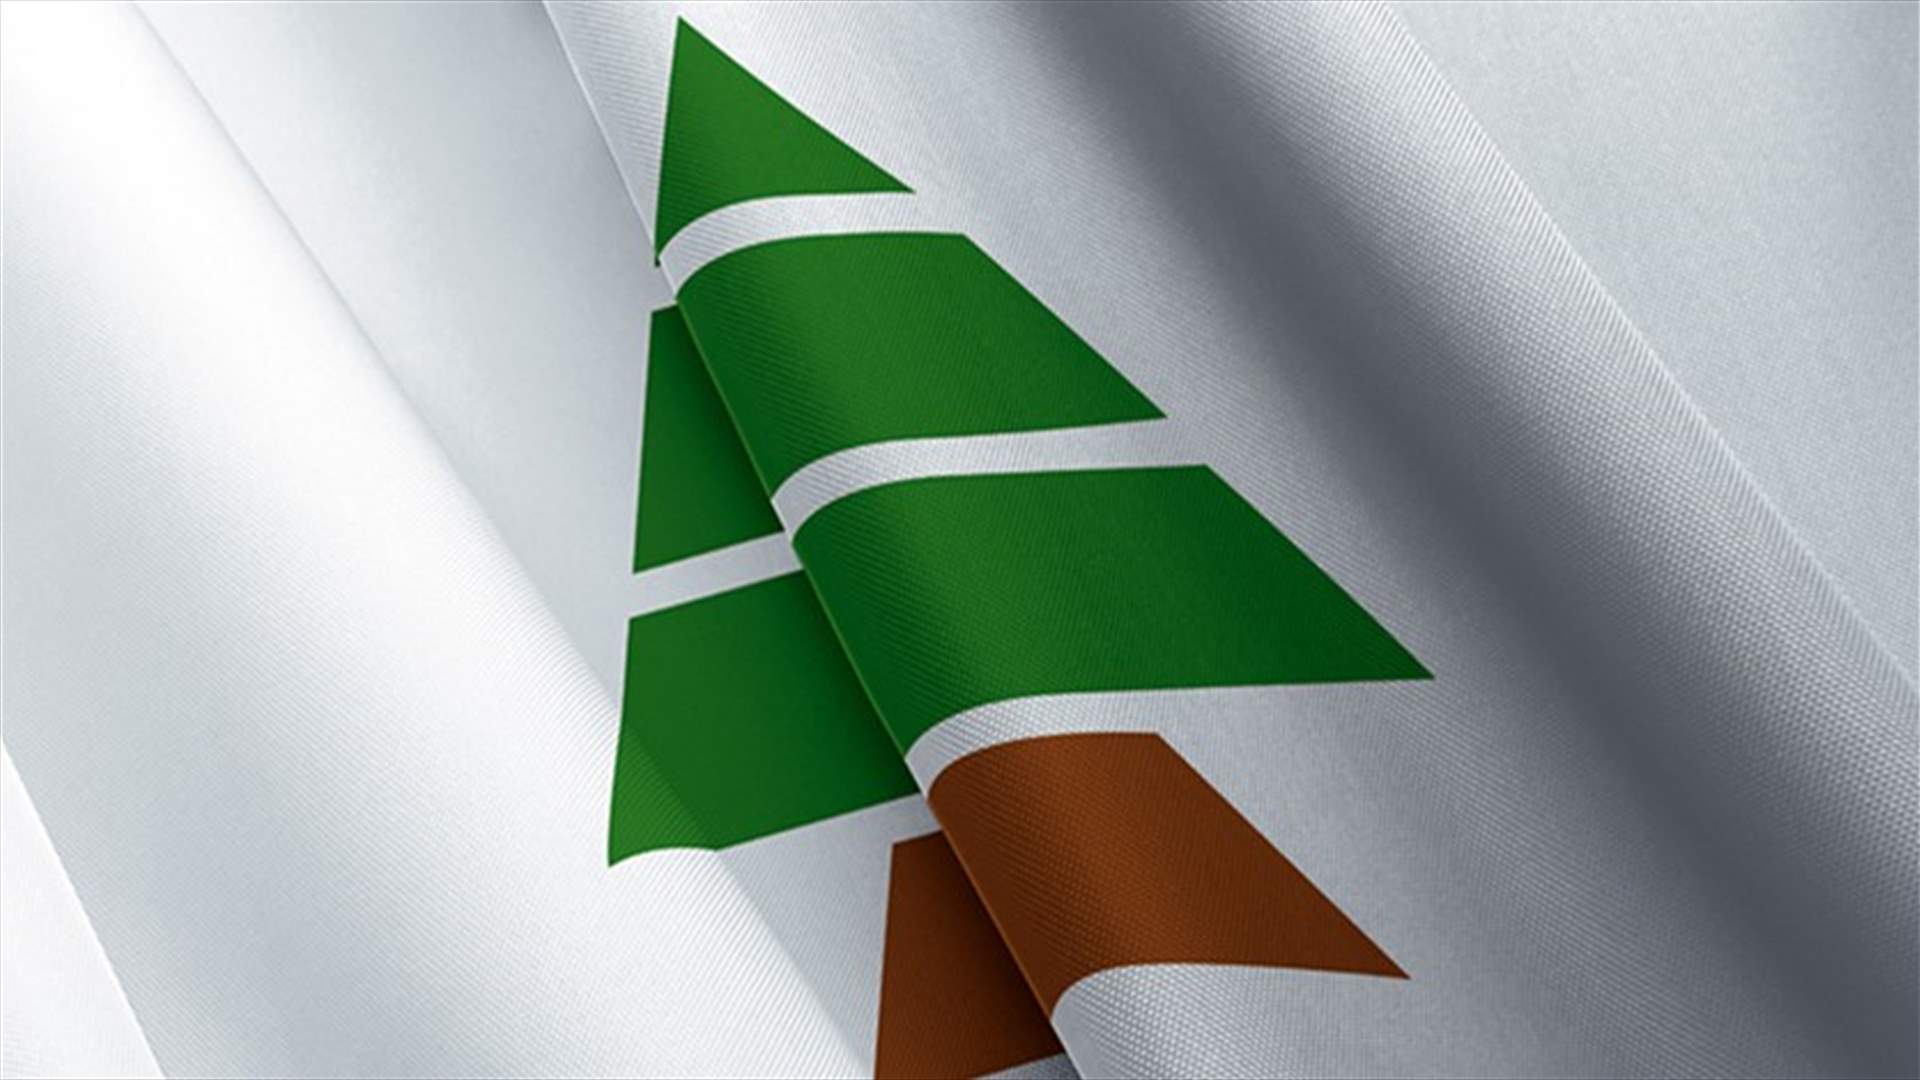 الكتائب: حذار جر لبنان الى مغامرات غير محسوبة